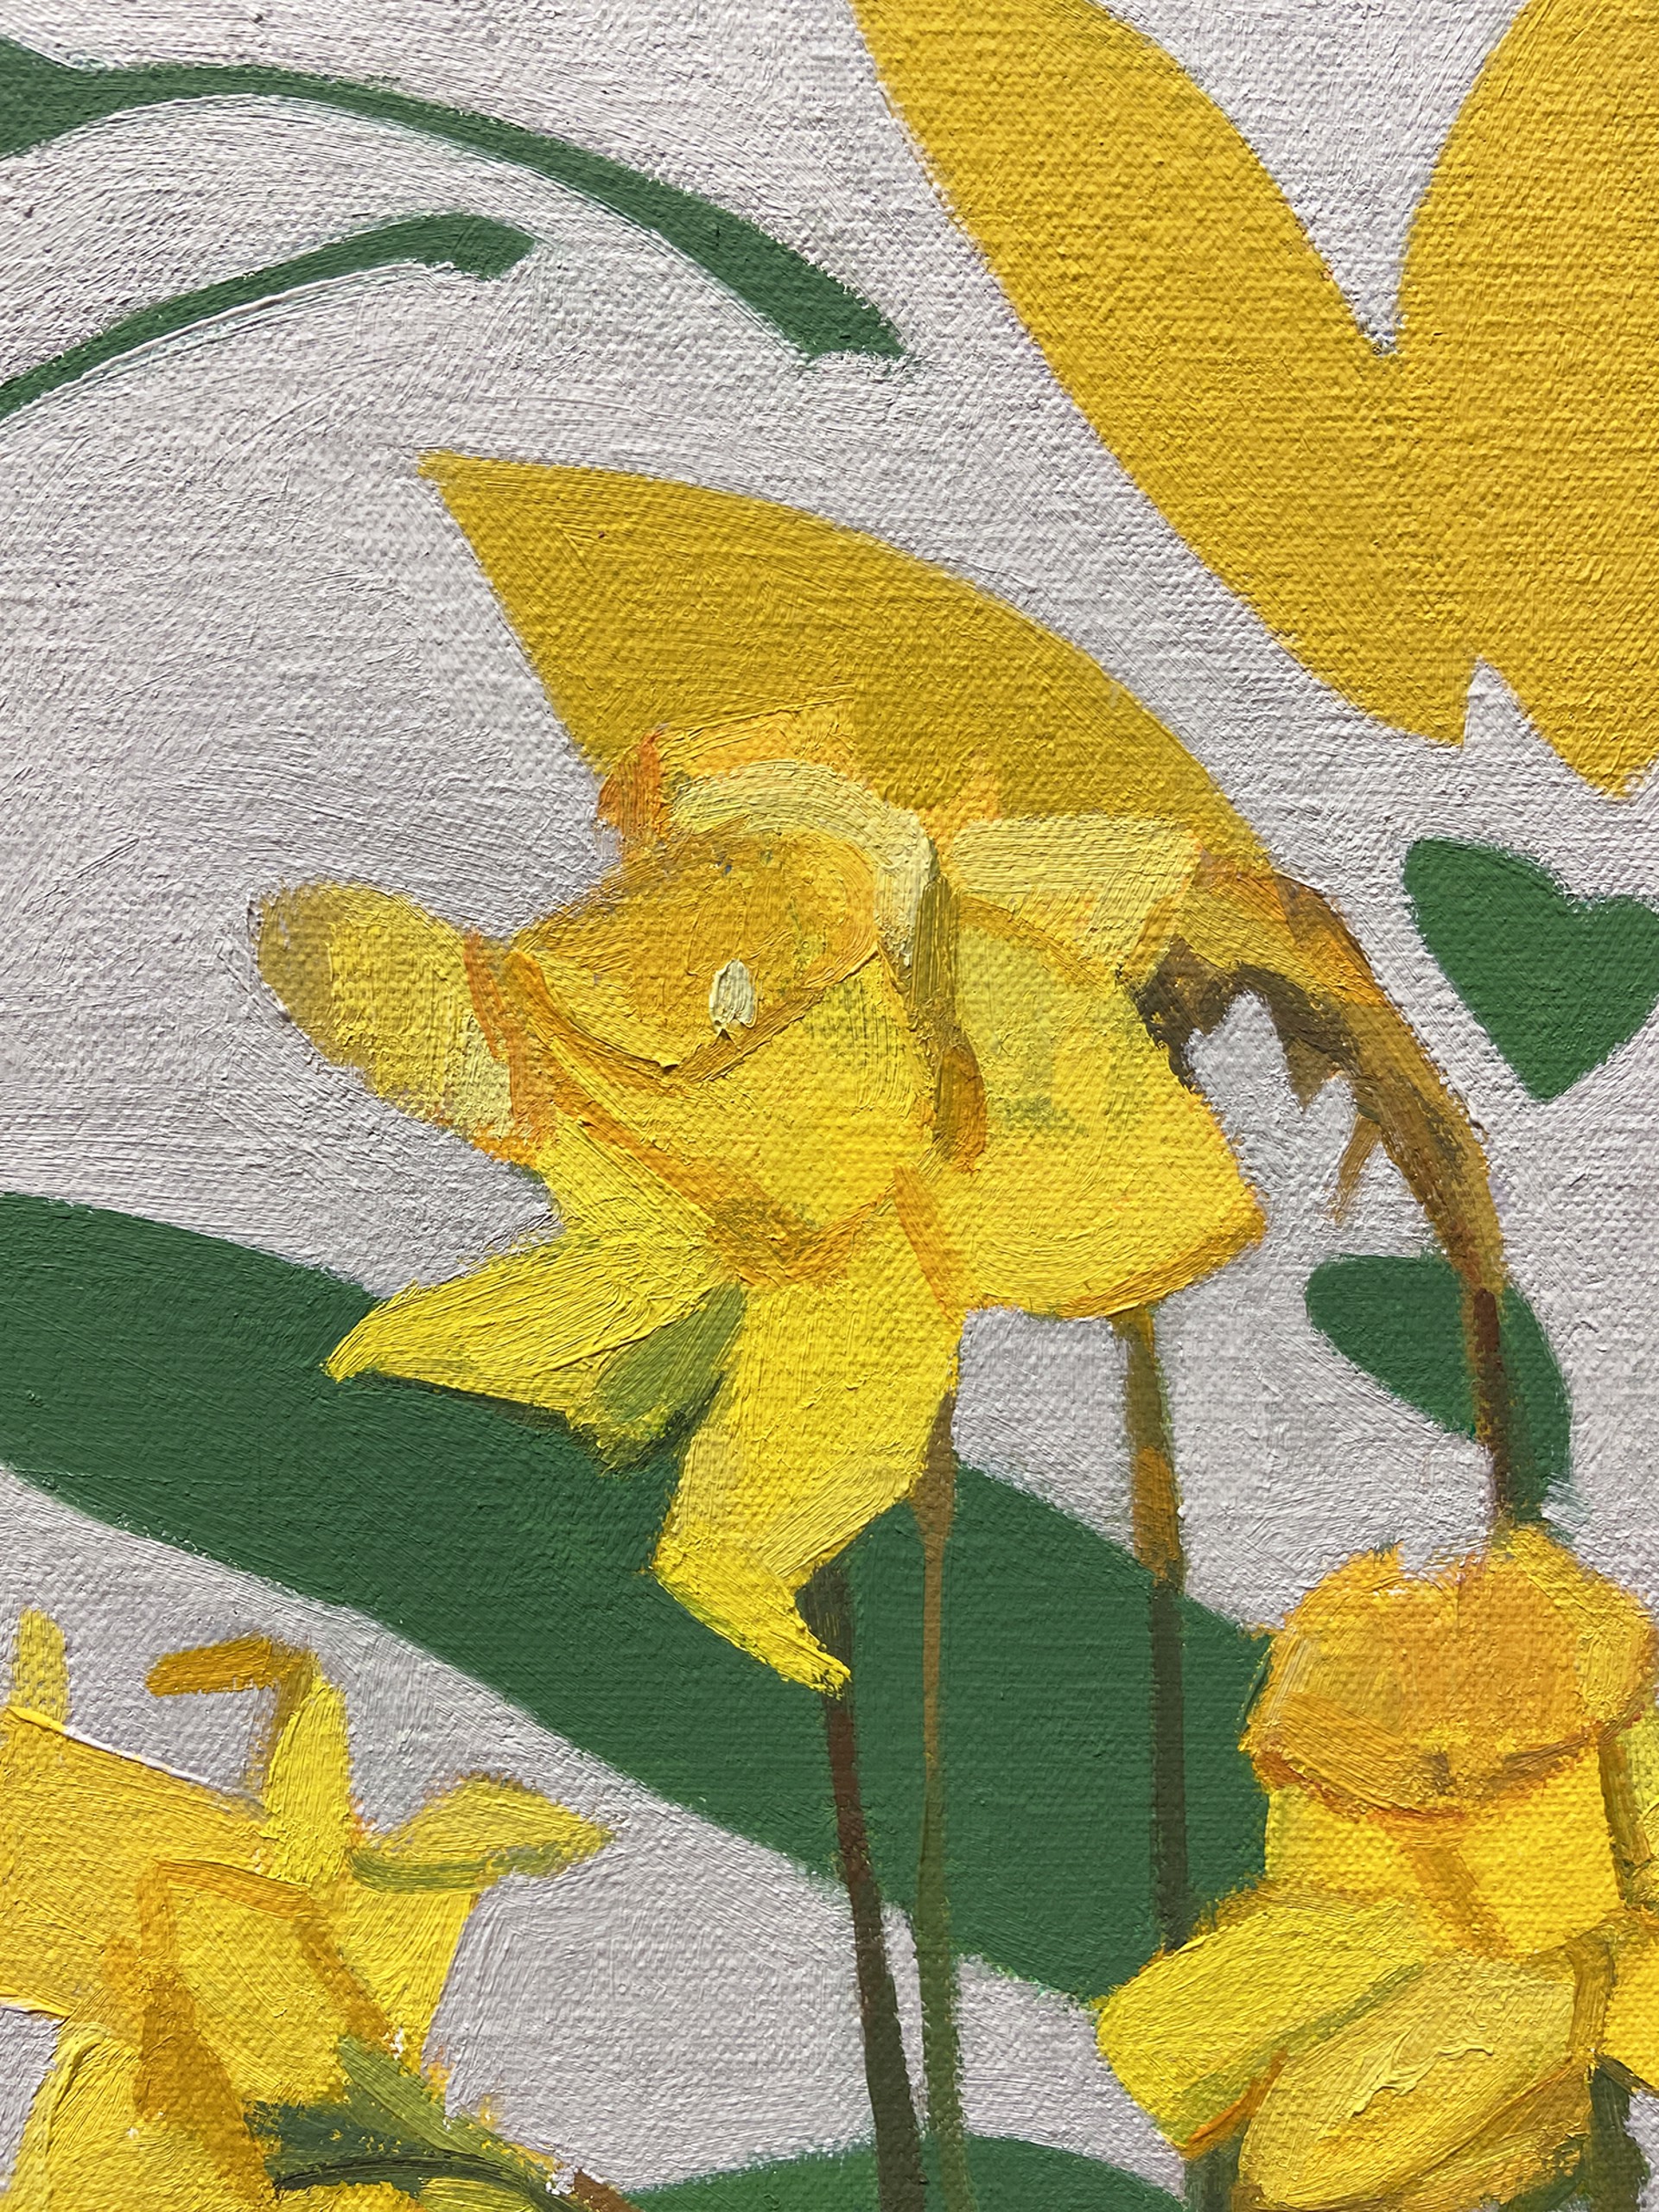 Hopeful Daffodils by Christina Renfer Vogel